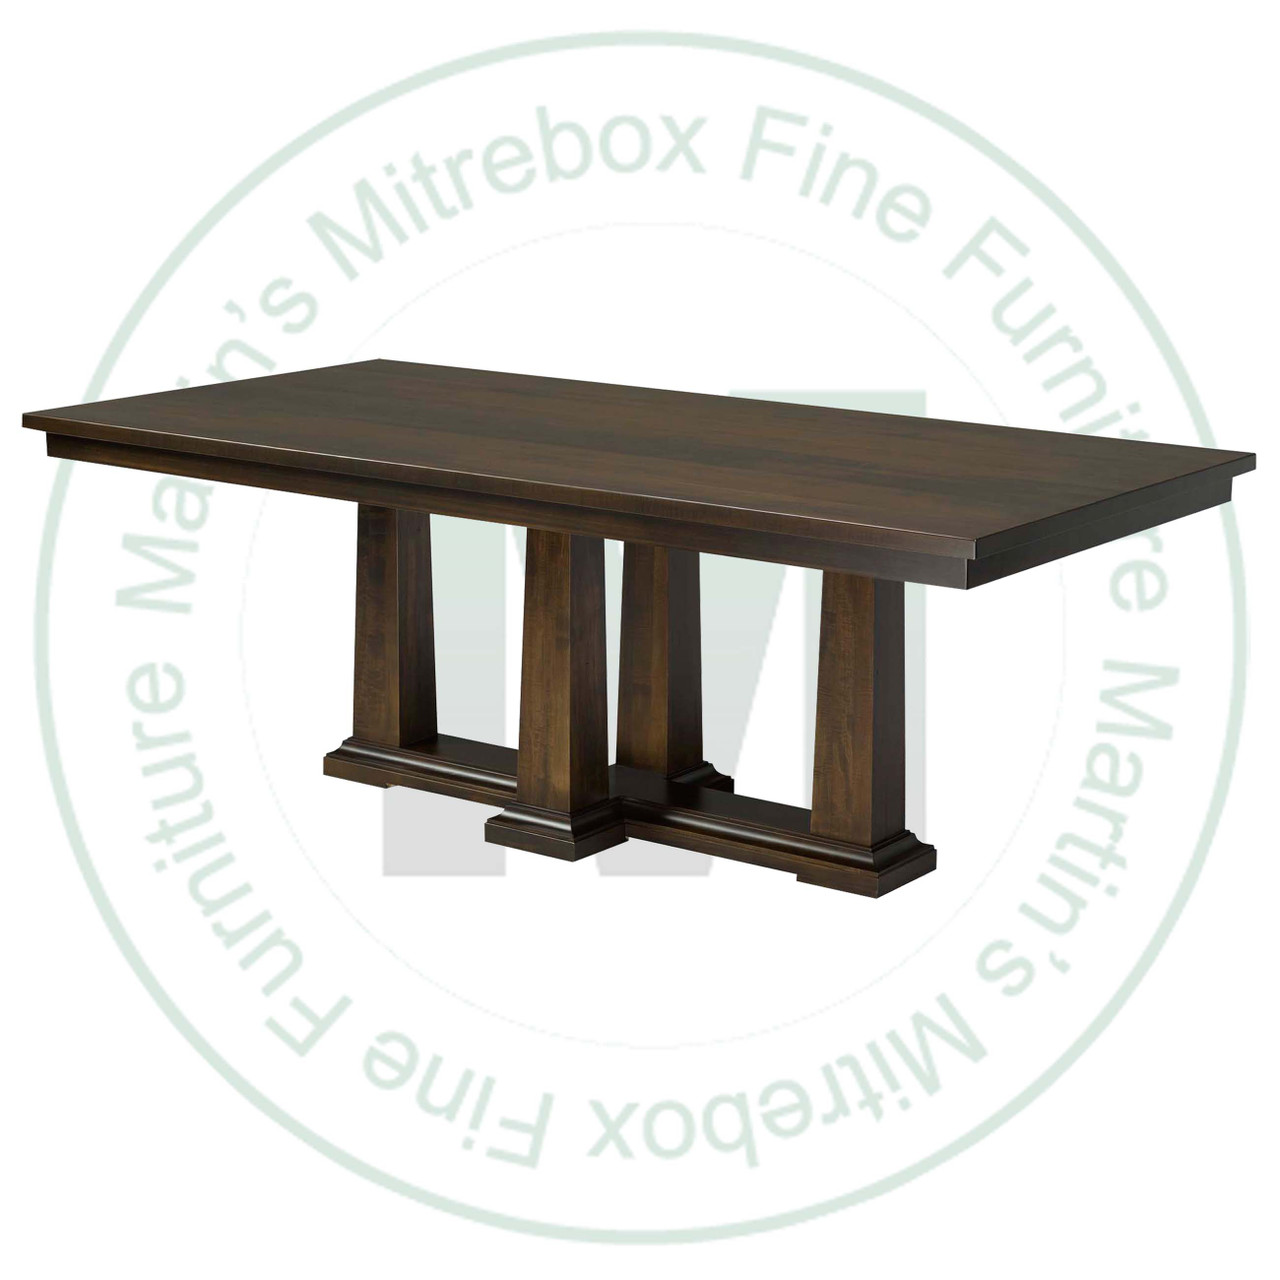 Oak Parthenon Double Pedestal Table 48''D x 120''W x 30''H And 2 - 16'' Extensions